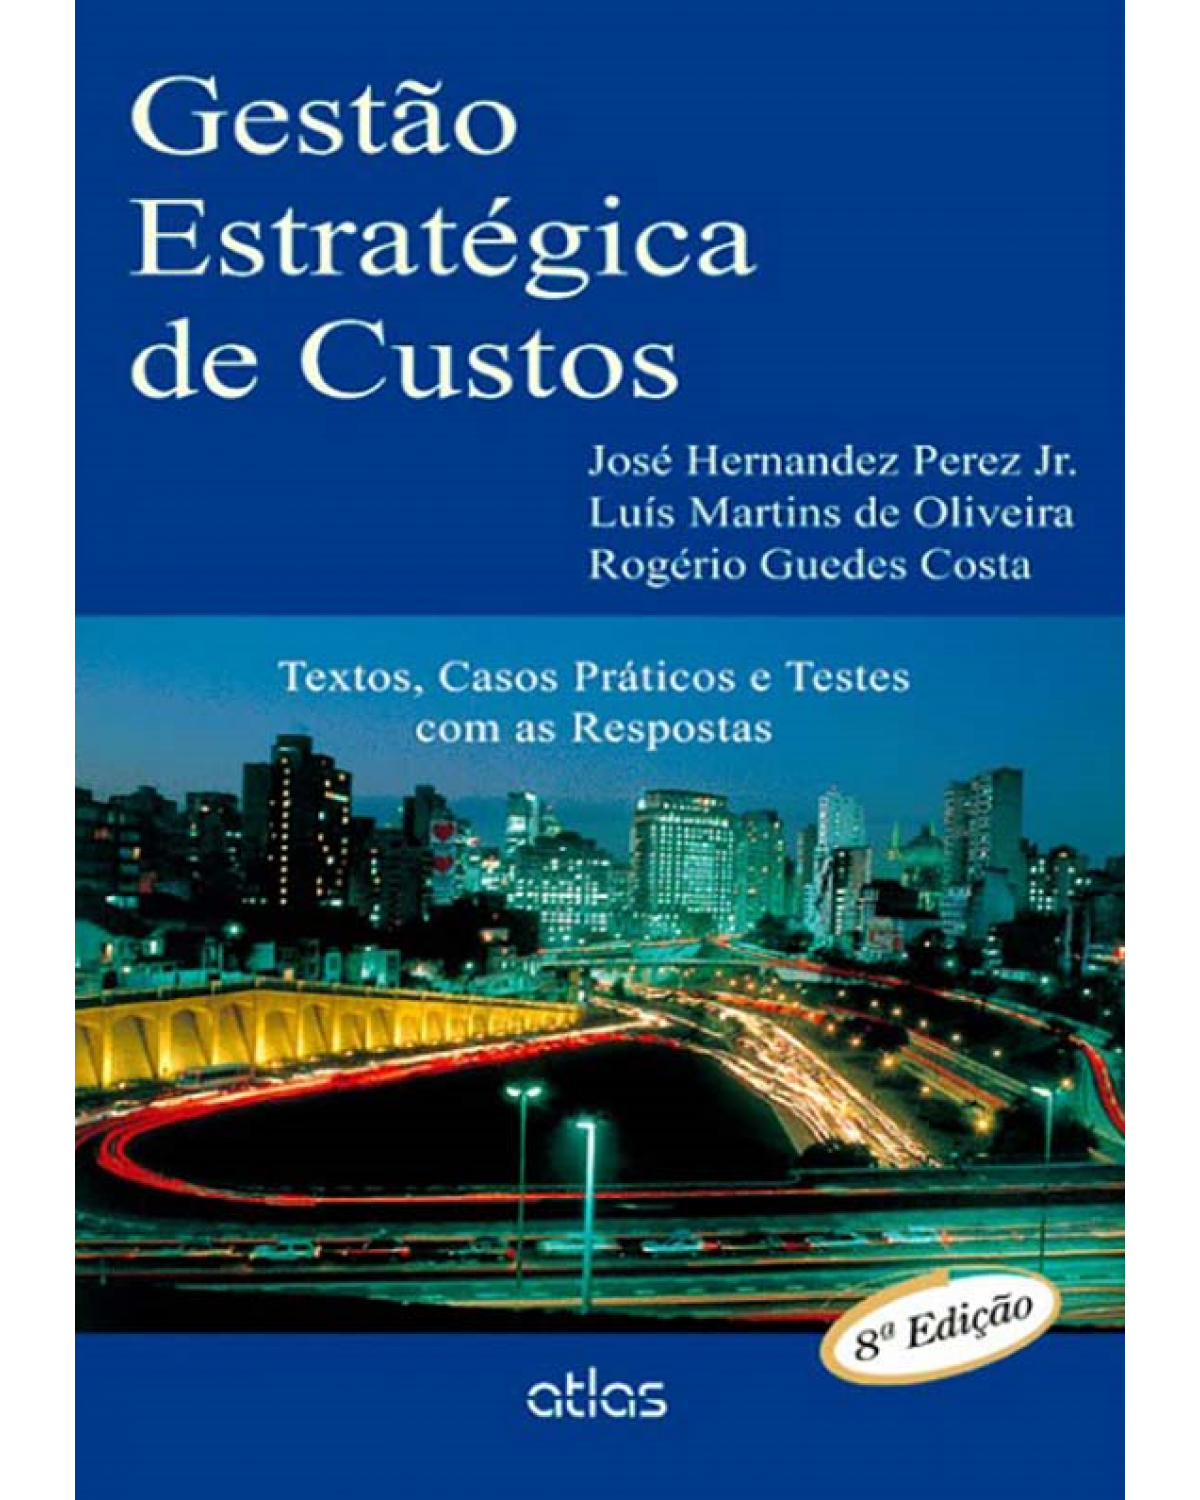 Gestão estratégica de custos - Textos, casos práticos e testes com as respostas - 8ª Edição | 2012